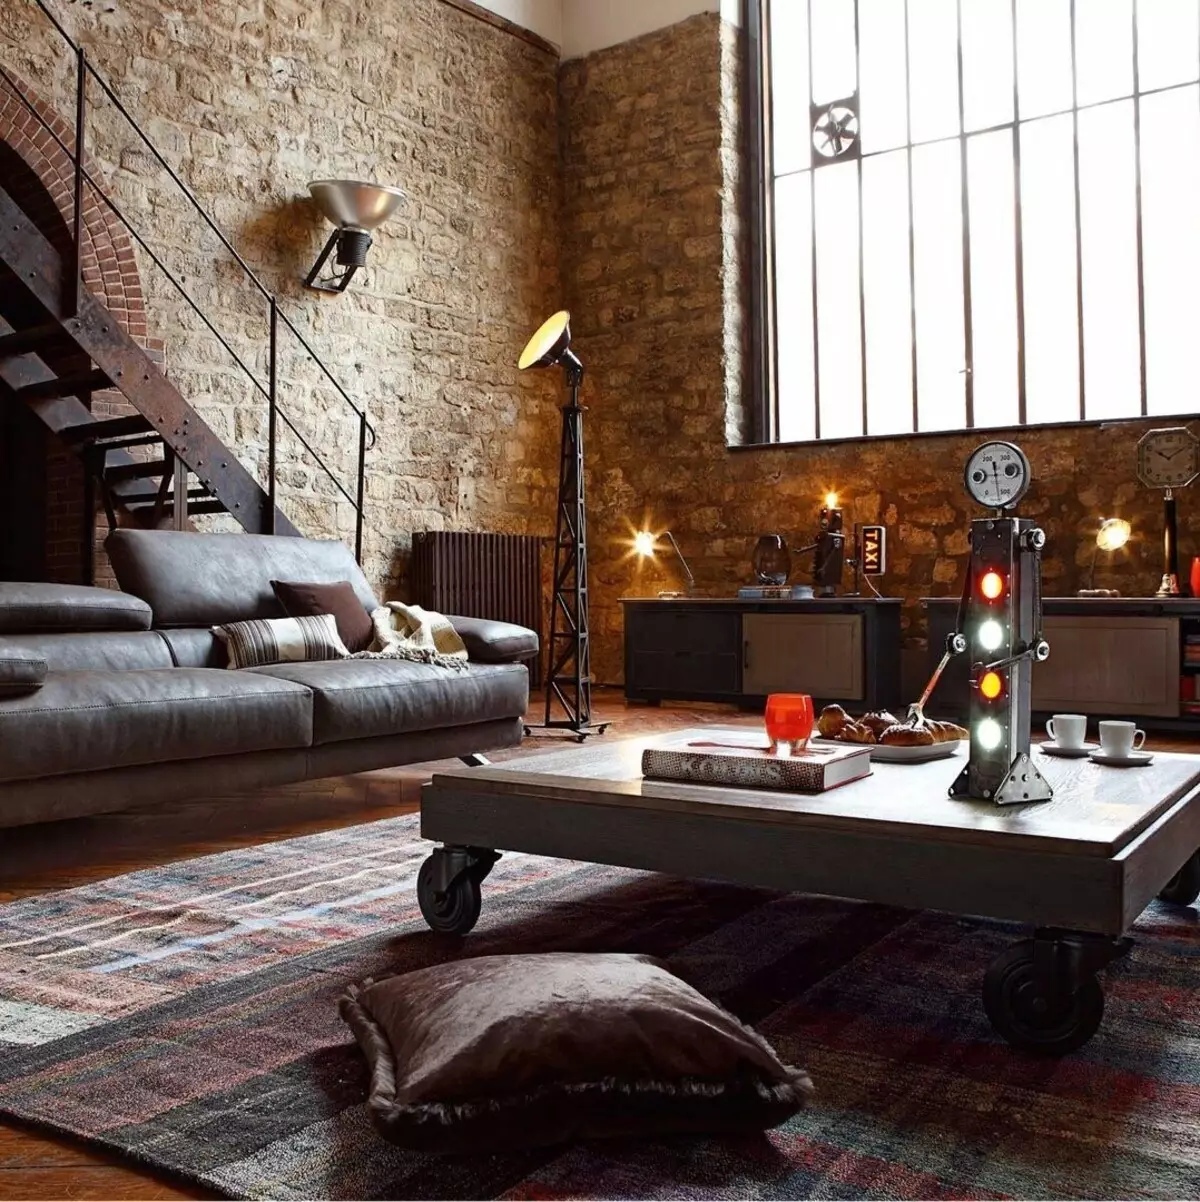 Interiérový obývací pokoj v soukromém domě: Vytvořte pokoj krásně a funkčně 8382_84